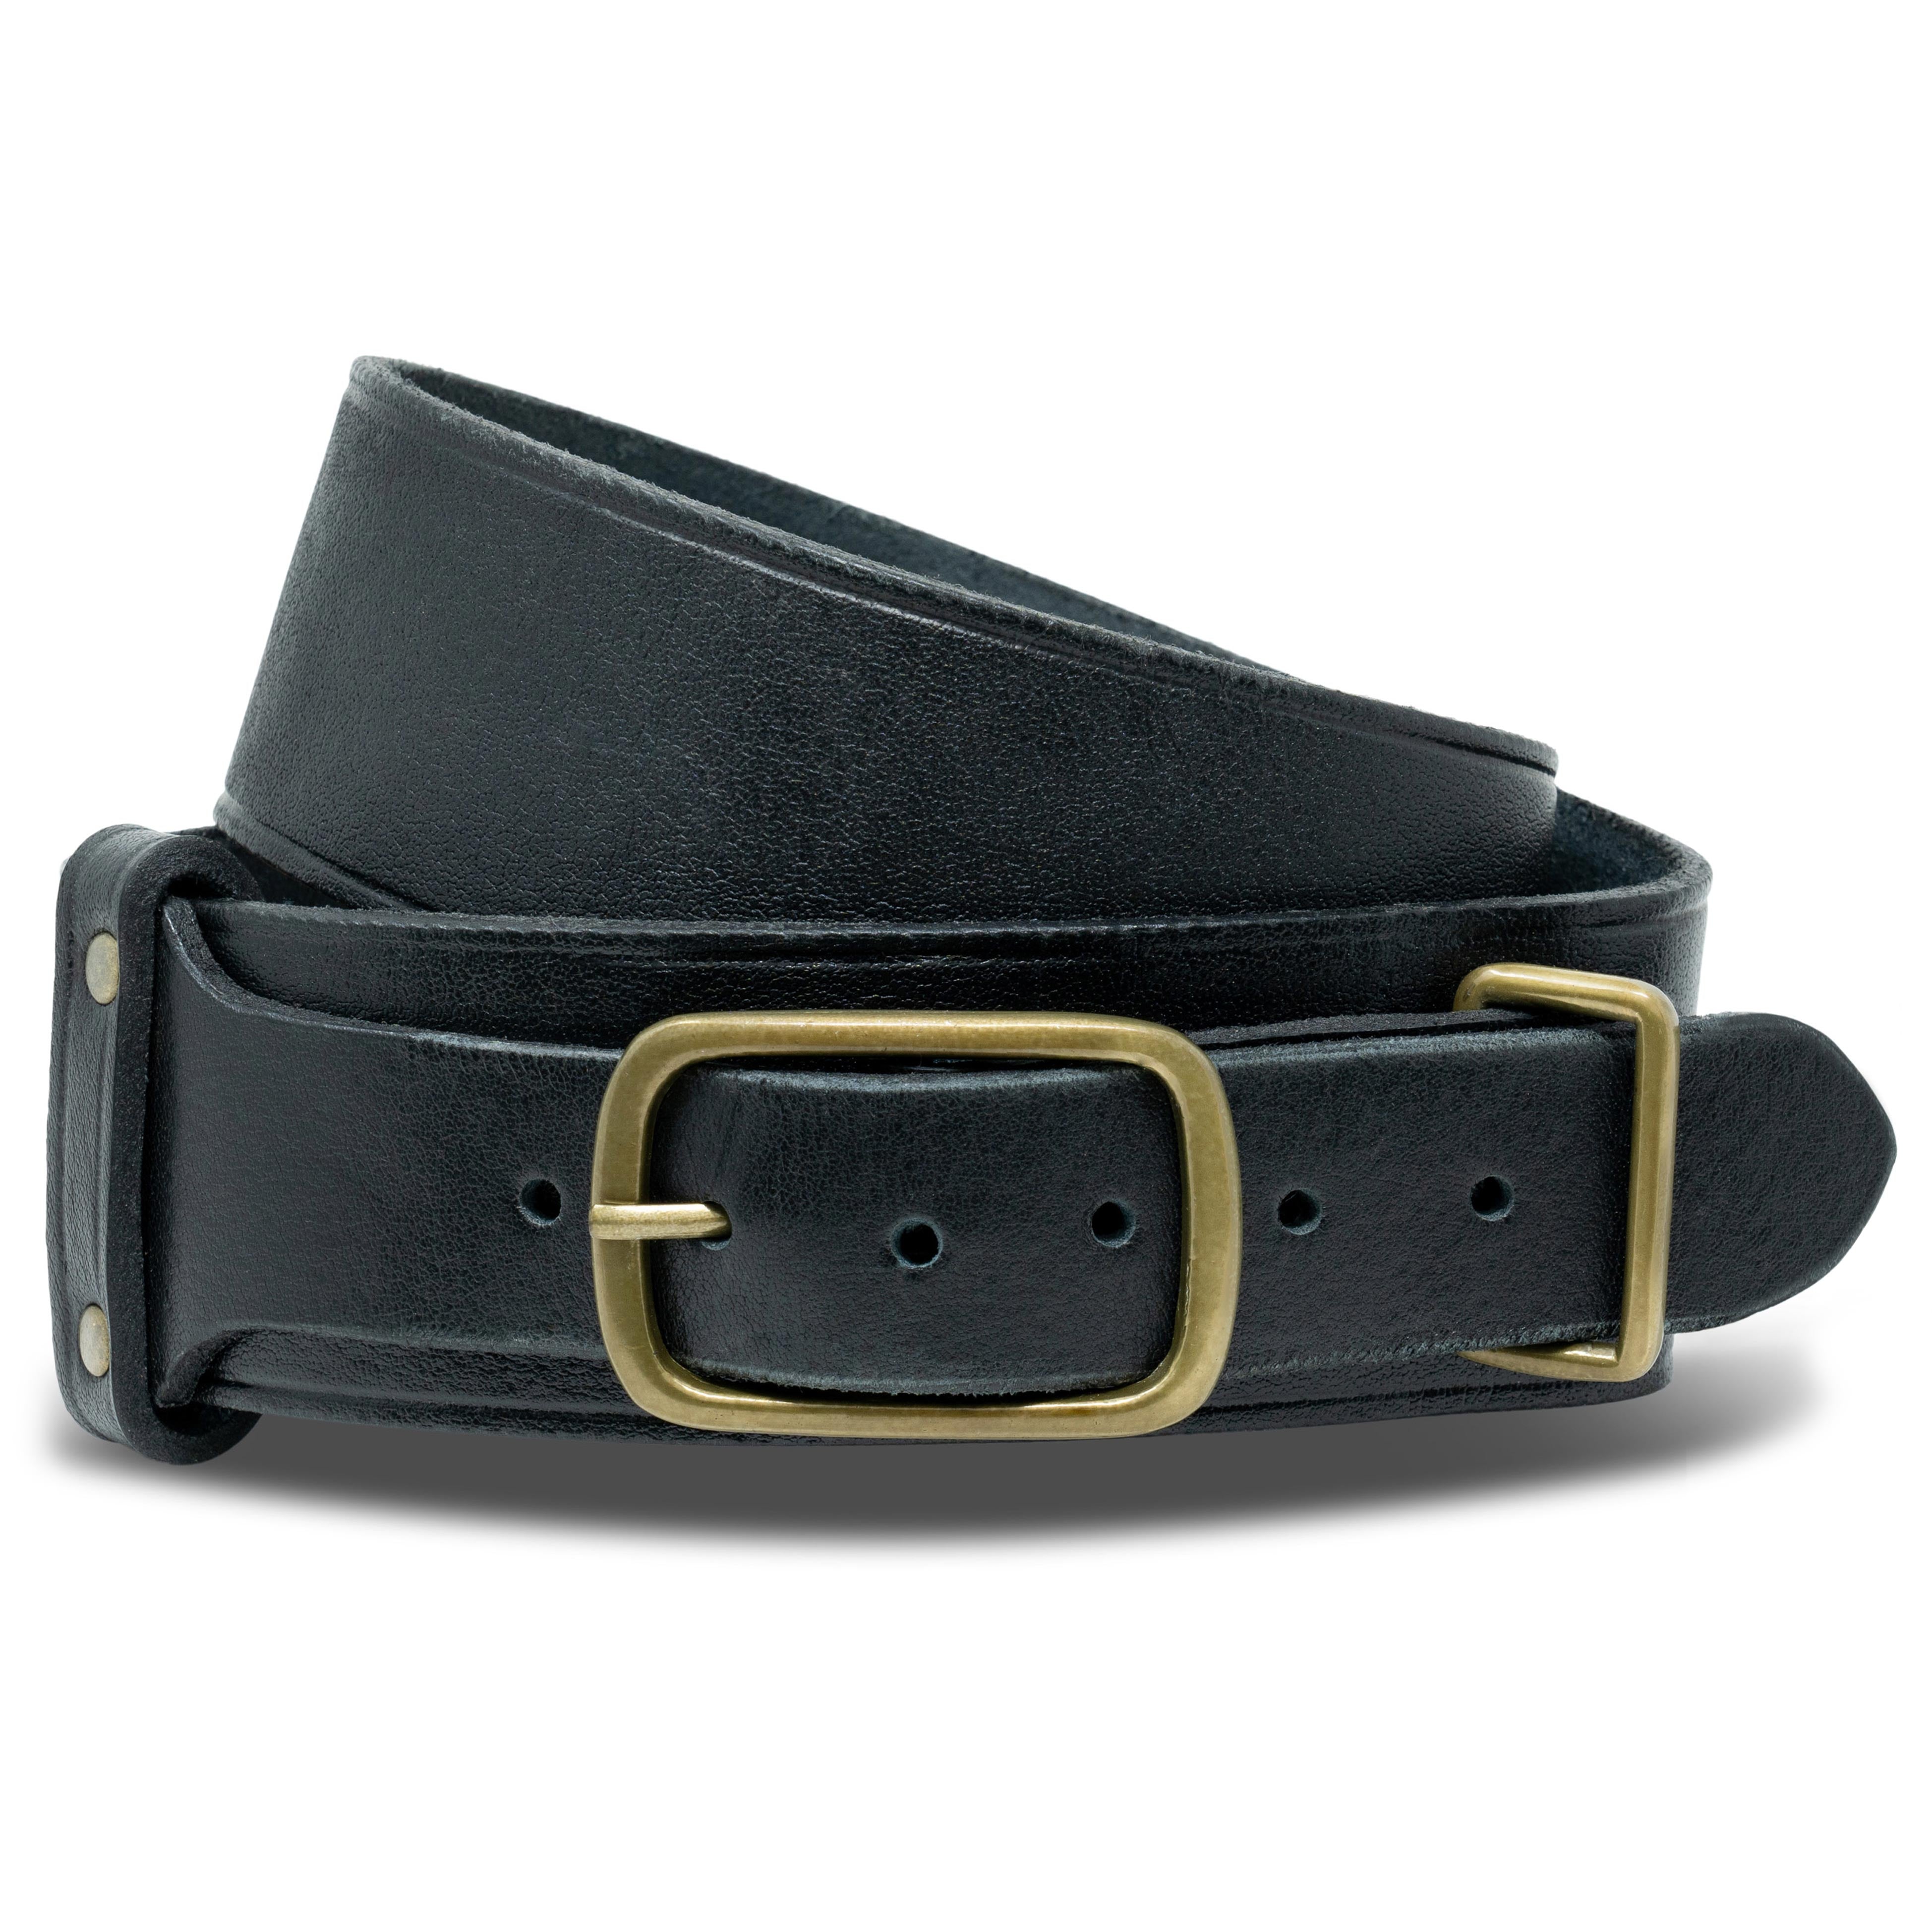 Kilt Belt, Brown, 2 Inch, Wide Leather Belt, for Mens Kilt